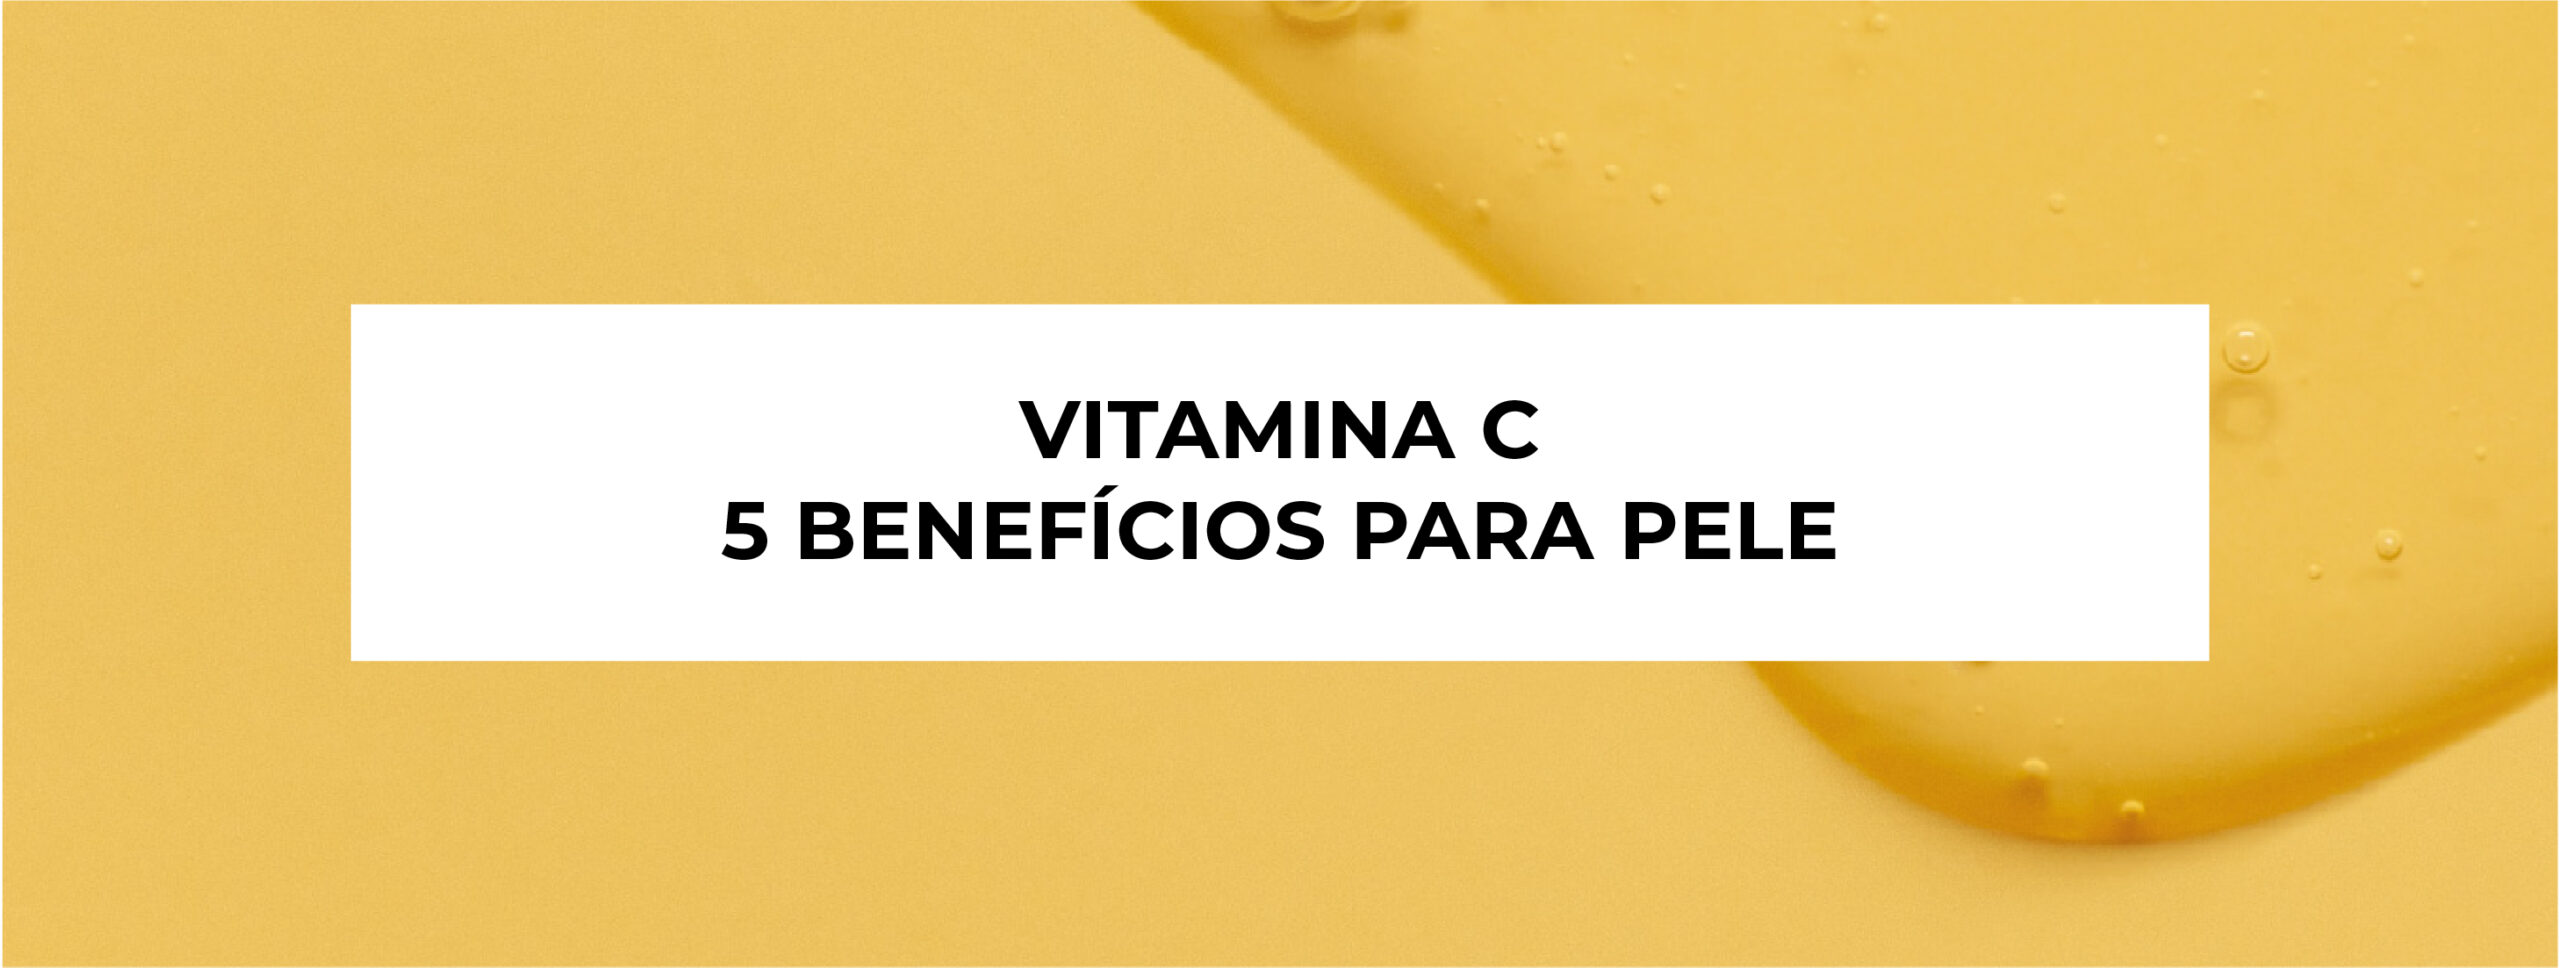 Vitamina c: 5 benefícios para sua pele